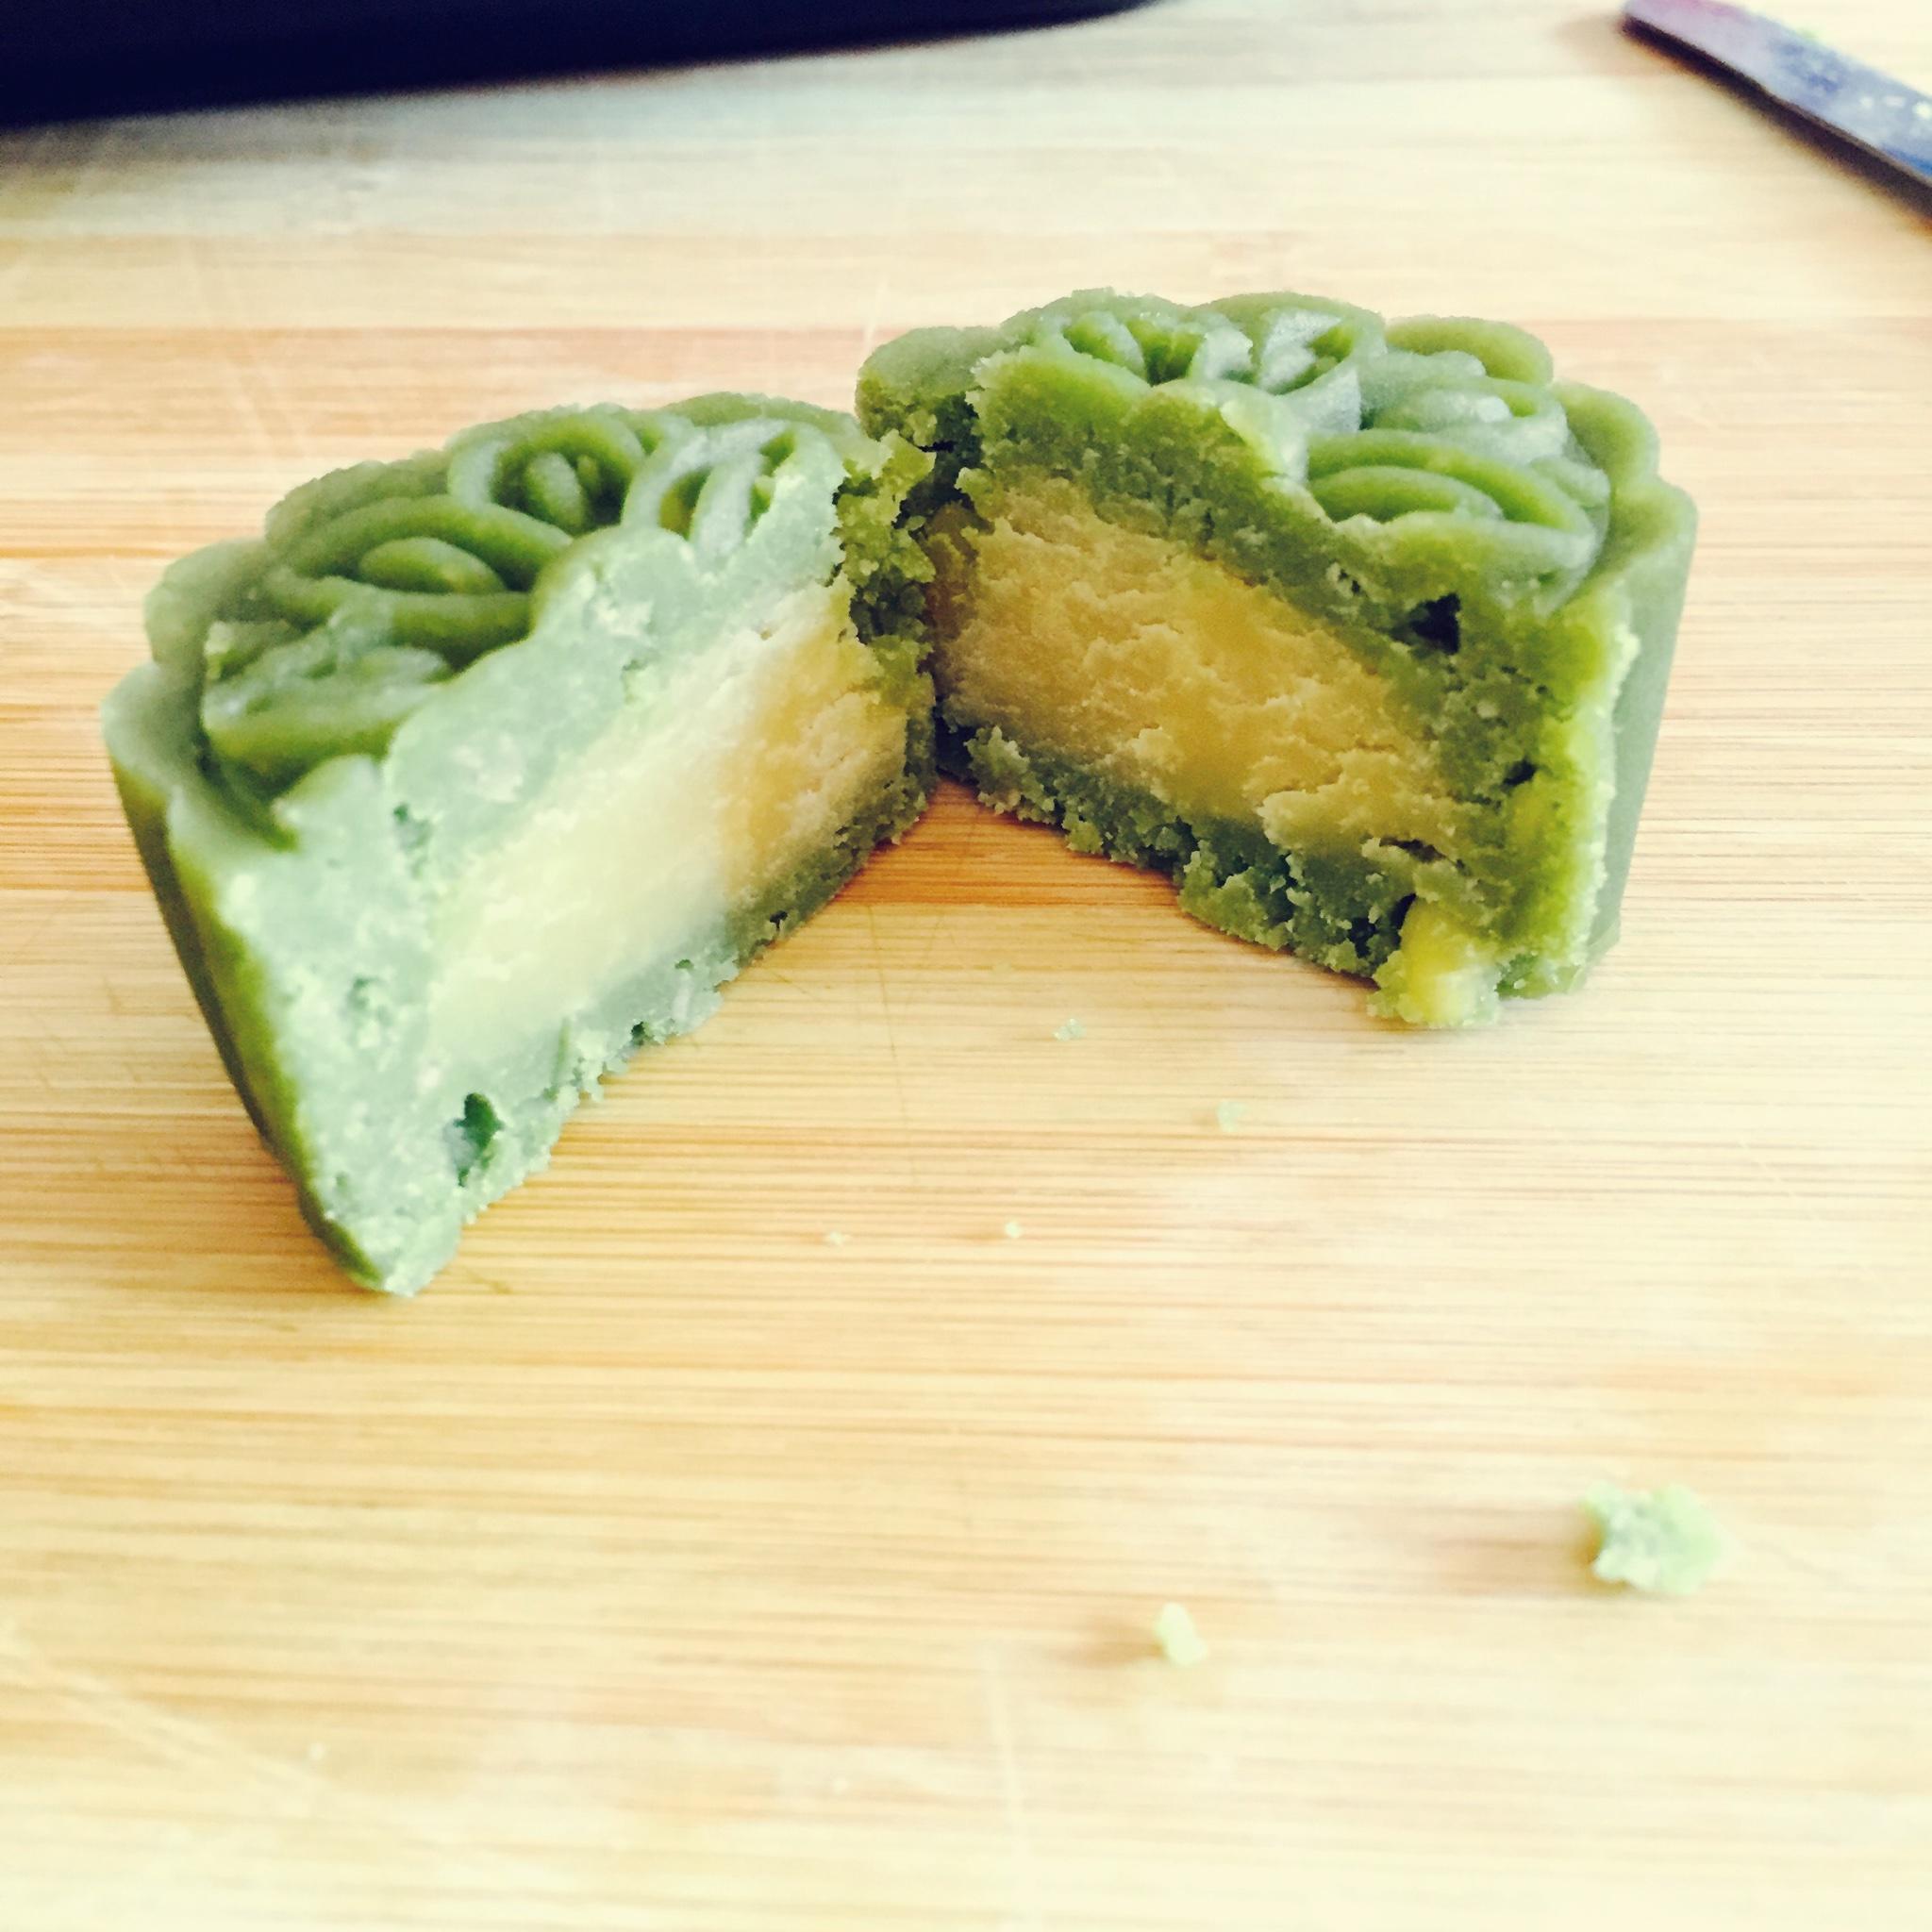 绿豆糕